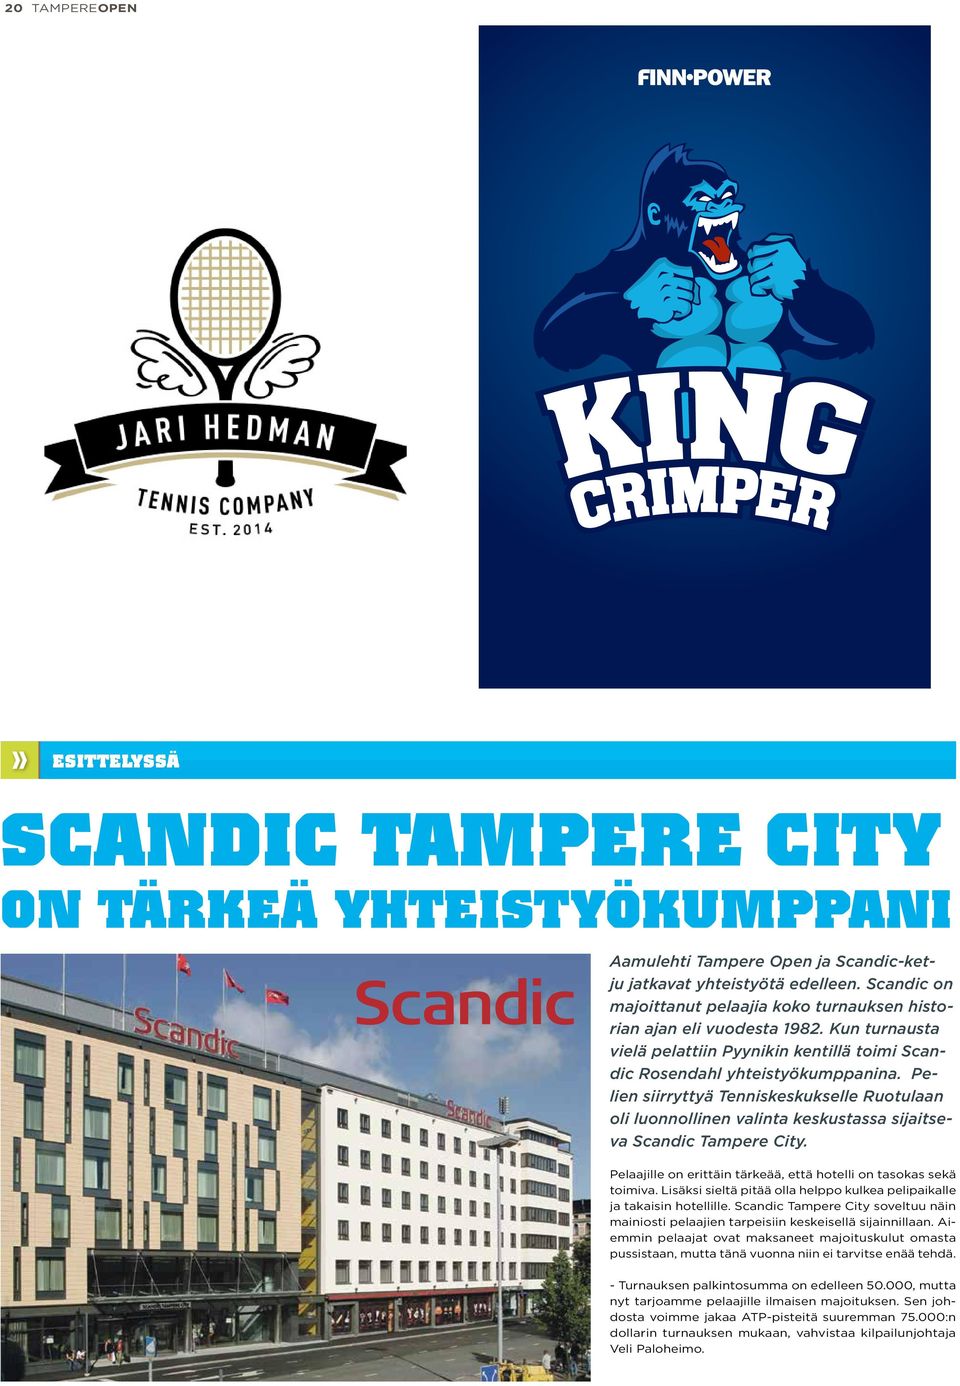 Pelien siirryttyä Tenniskeskukselle Ruotulaan oli luonnollinen valinta keskustassa sijaitseva Scandic Tampere City. Pelaajille on erittäin tärkeää, että hotelli on tasokas sekä toimiva.